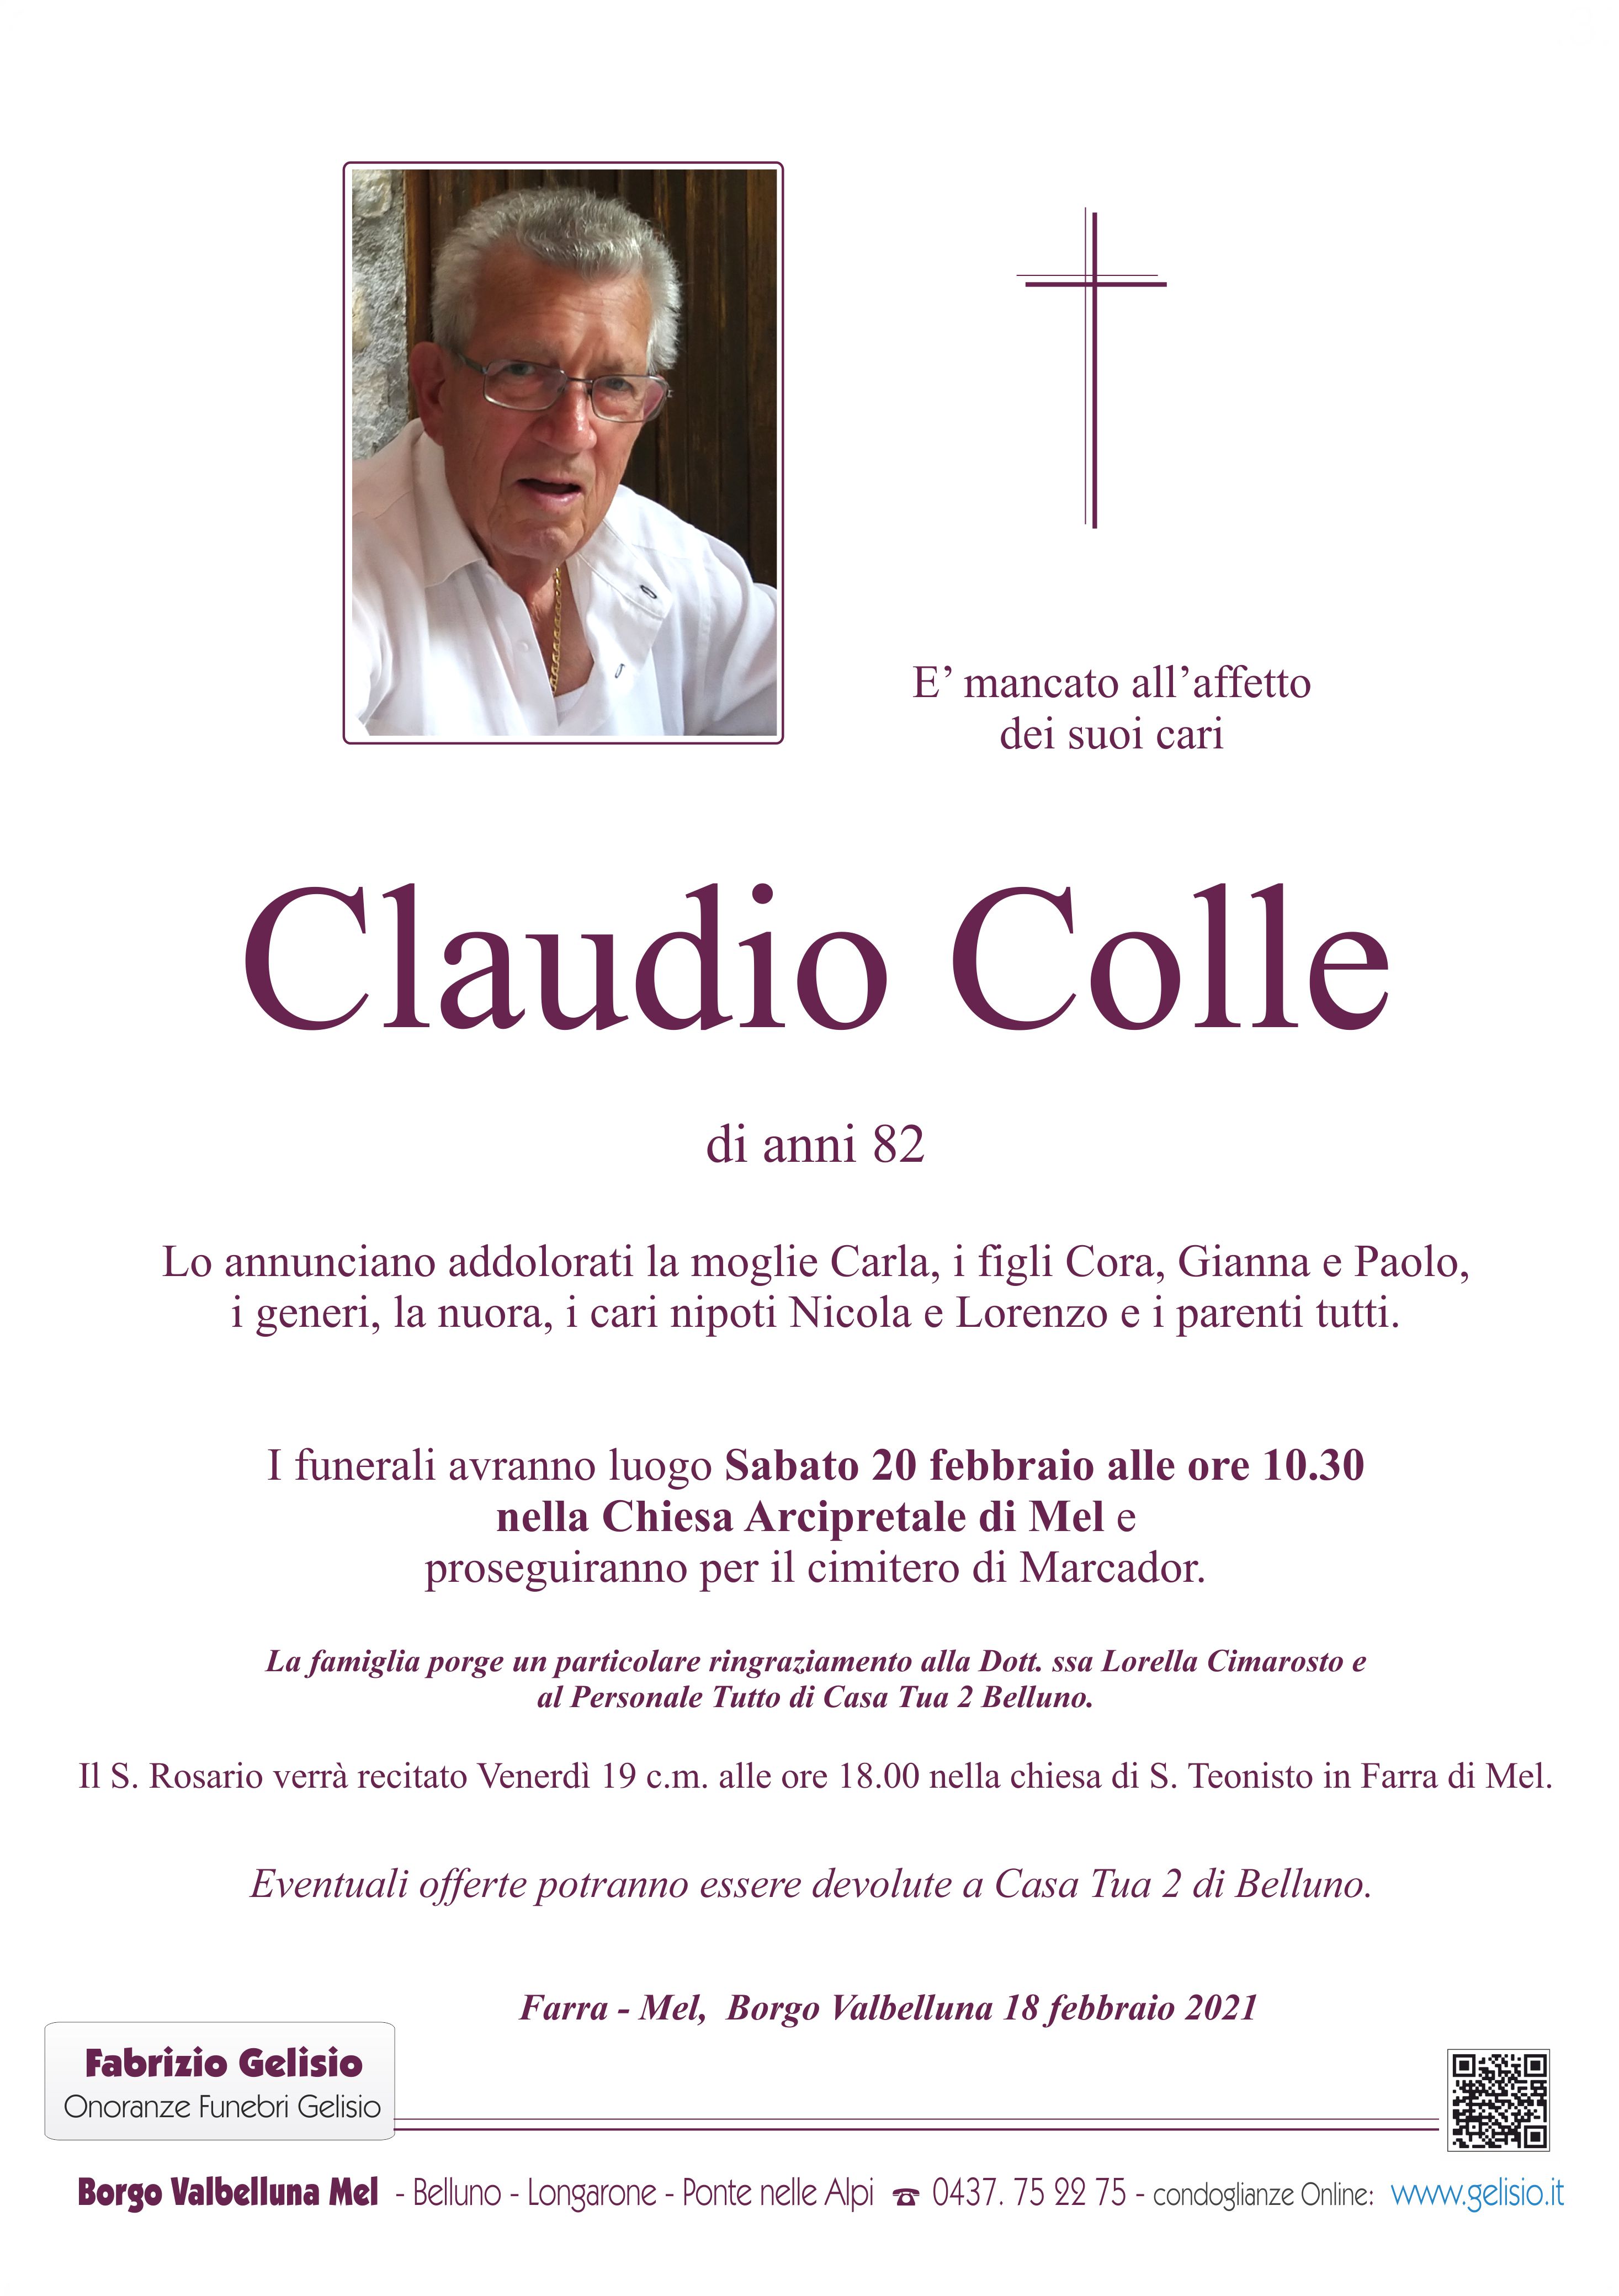 Colle Claudio